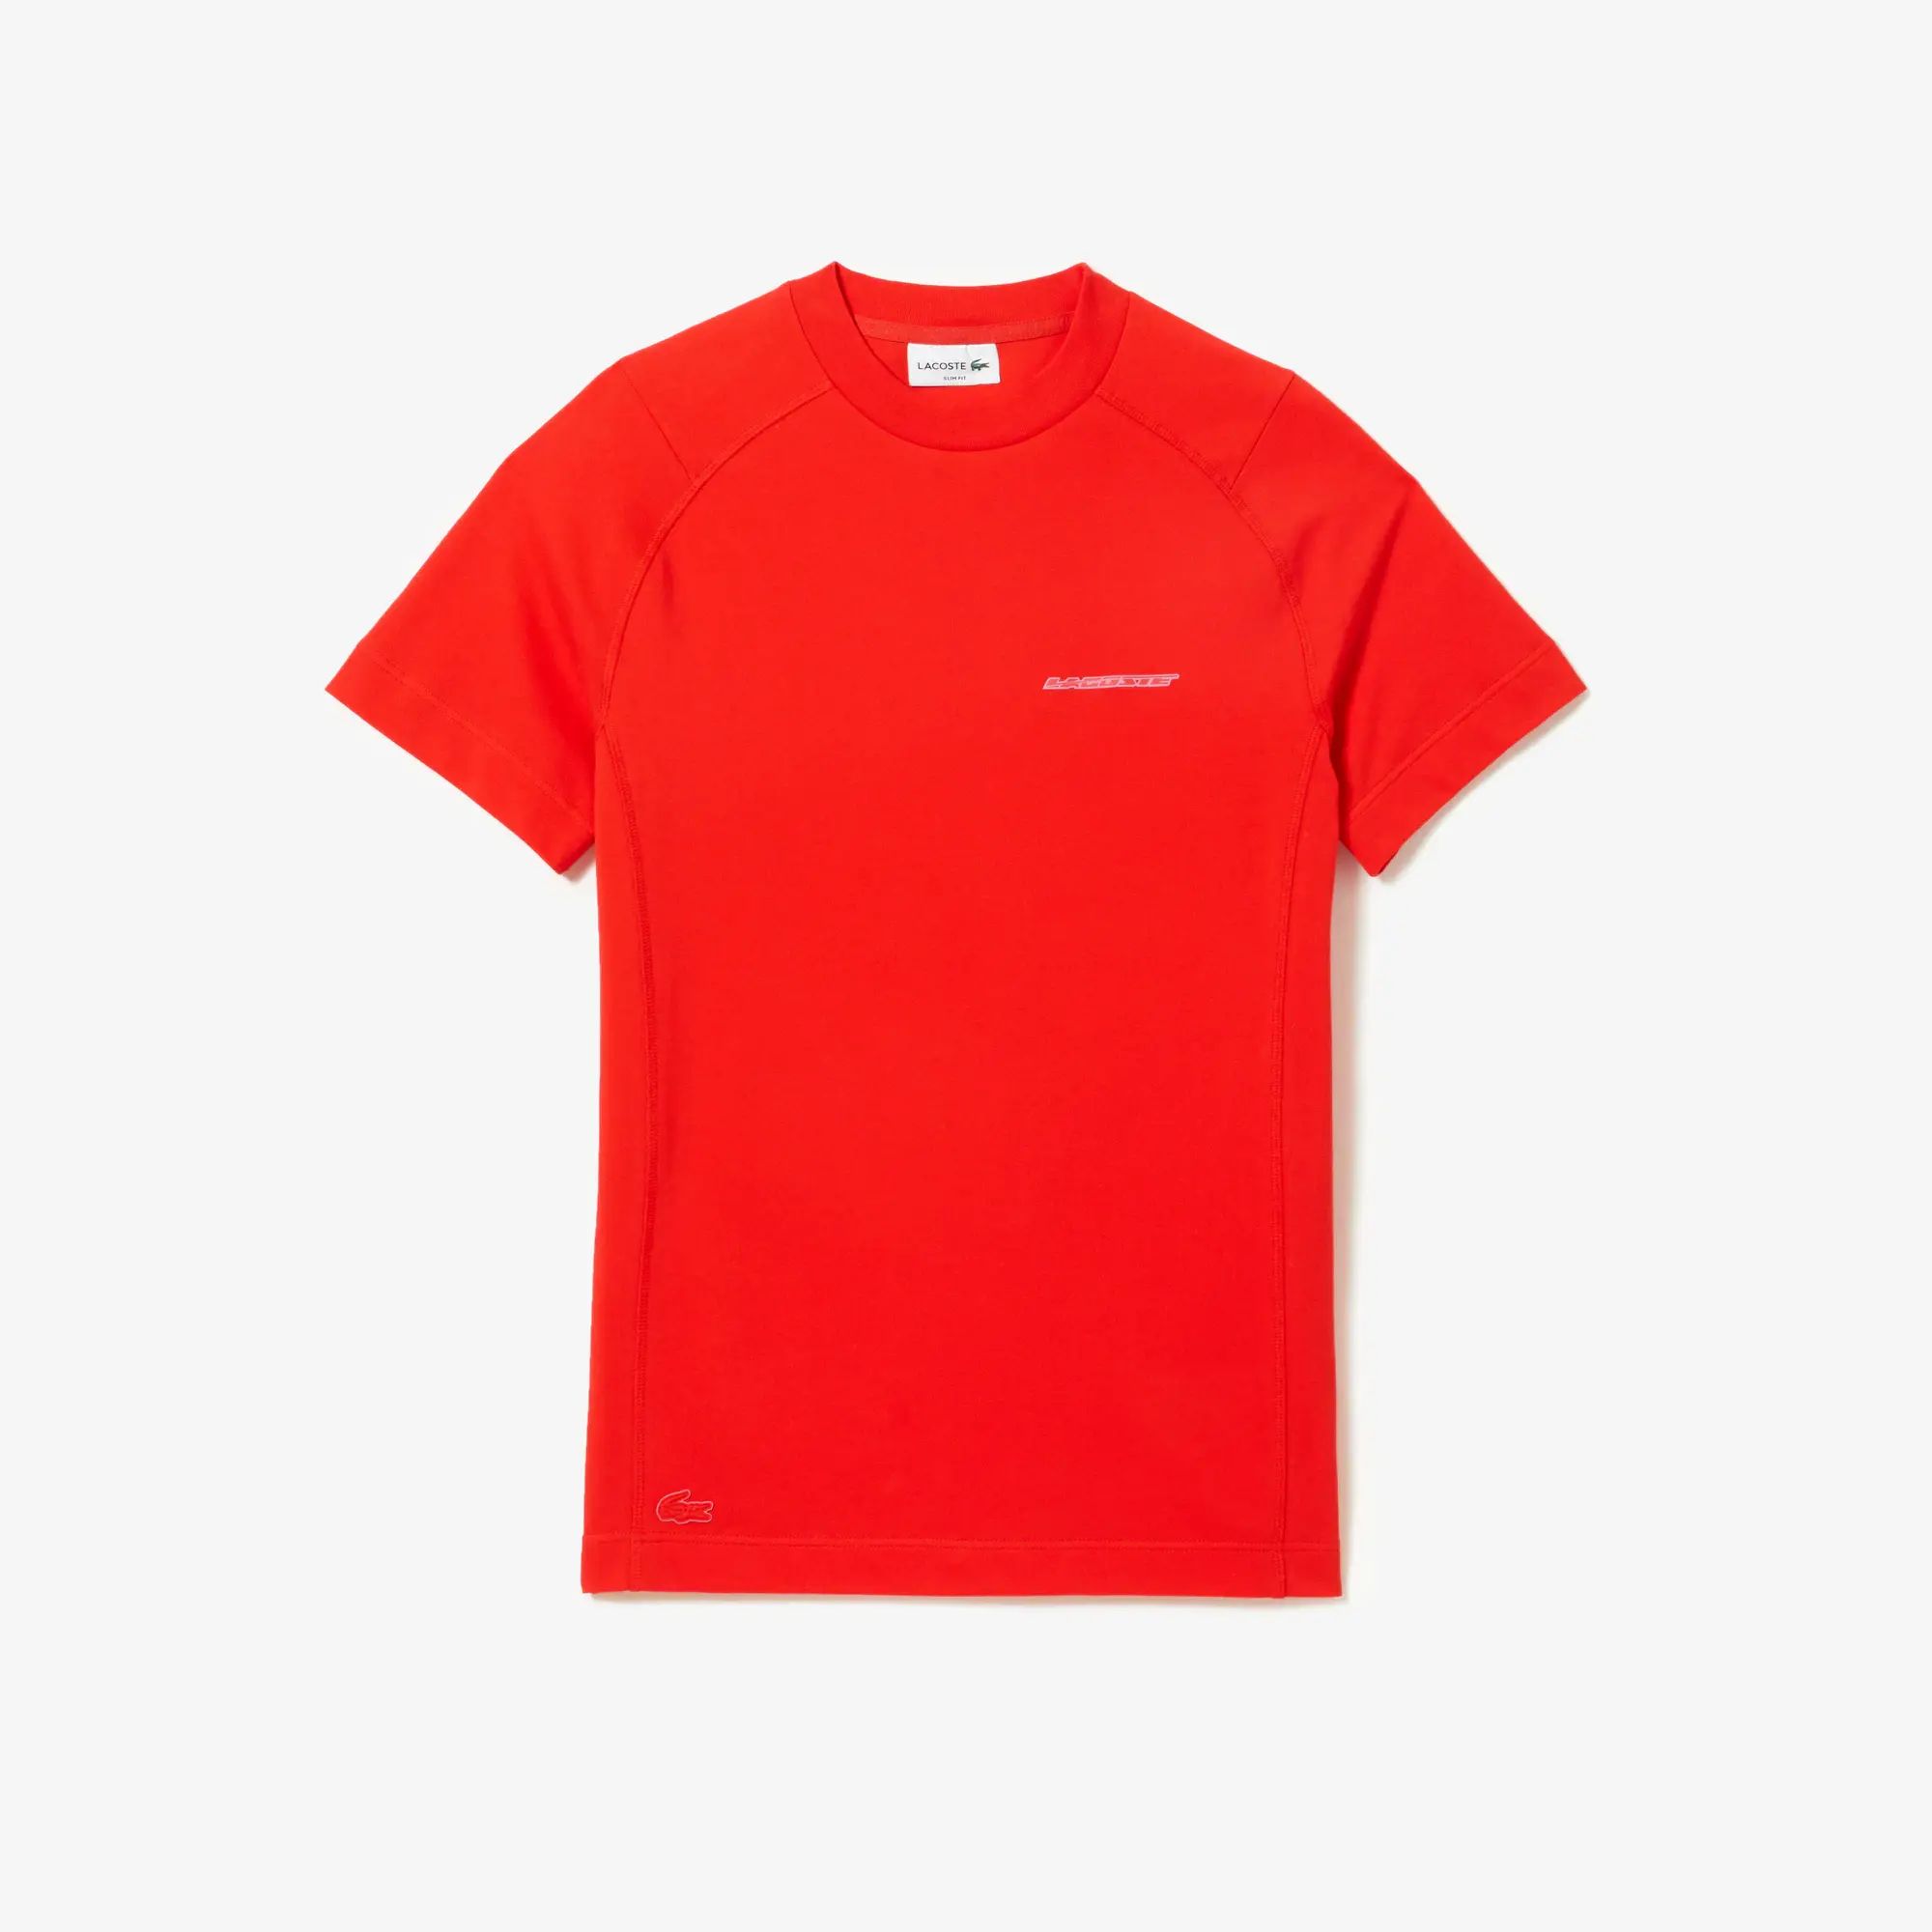 Lacoste Men’s Slim Fit Organic Cotton Piqué T-Shirt. 2